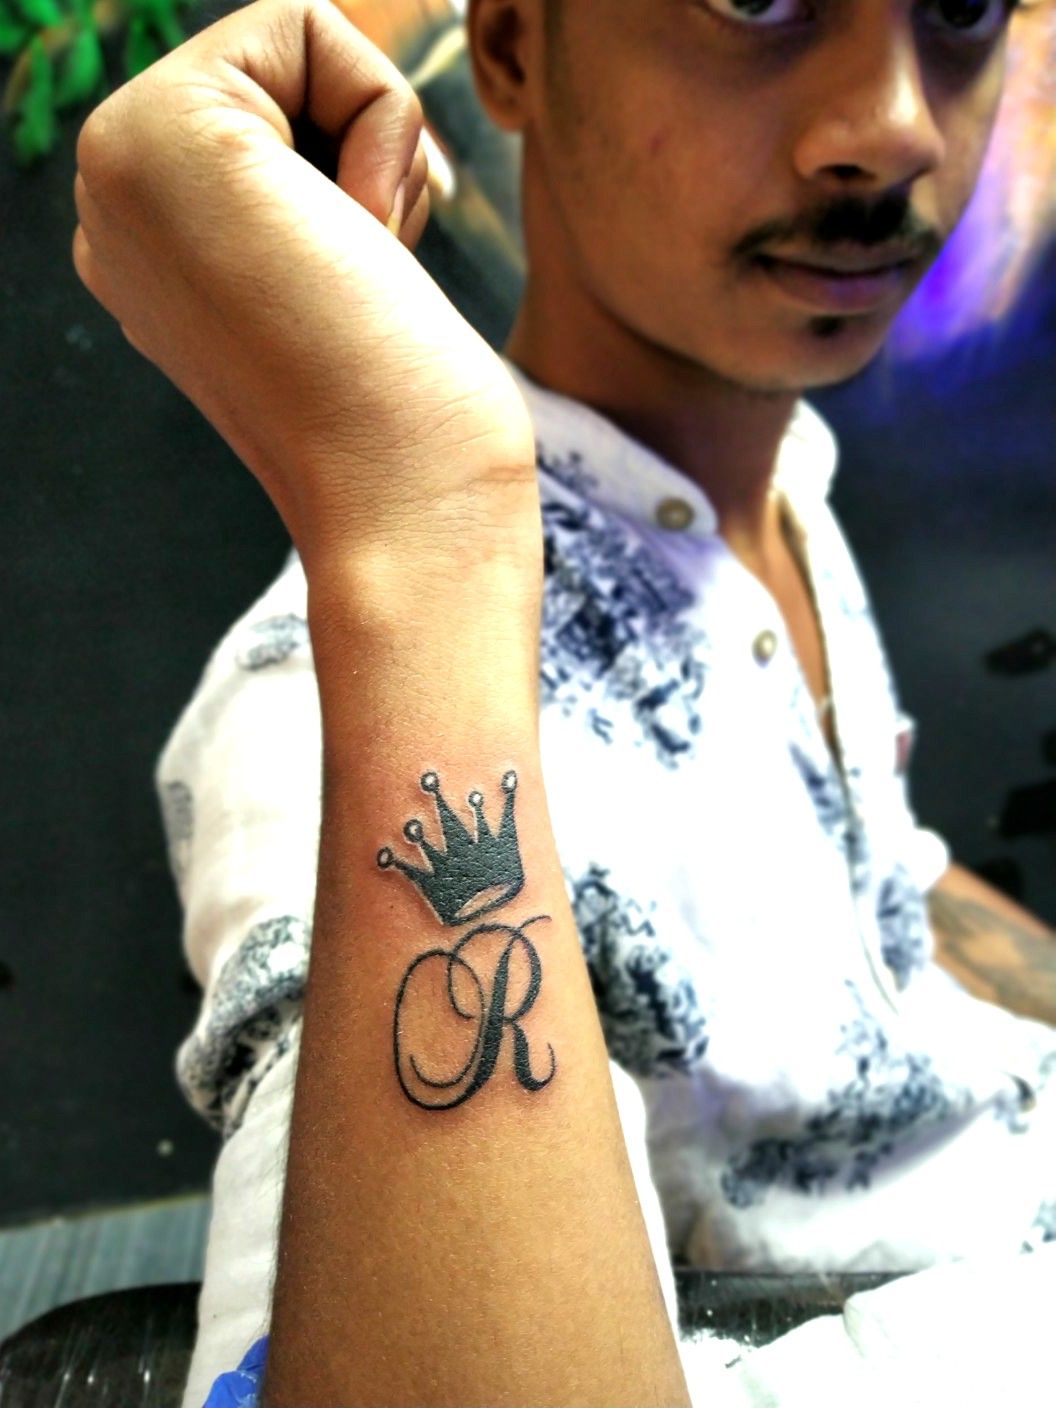 Letter R tattoo with Love  reels tattoo tattoos tattooartist  letterstattoo  Instagram